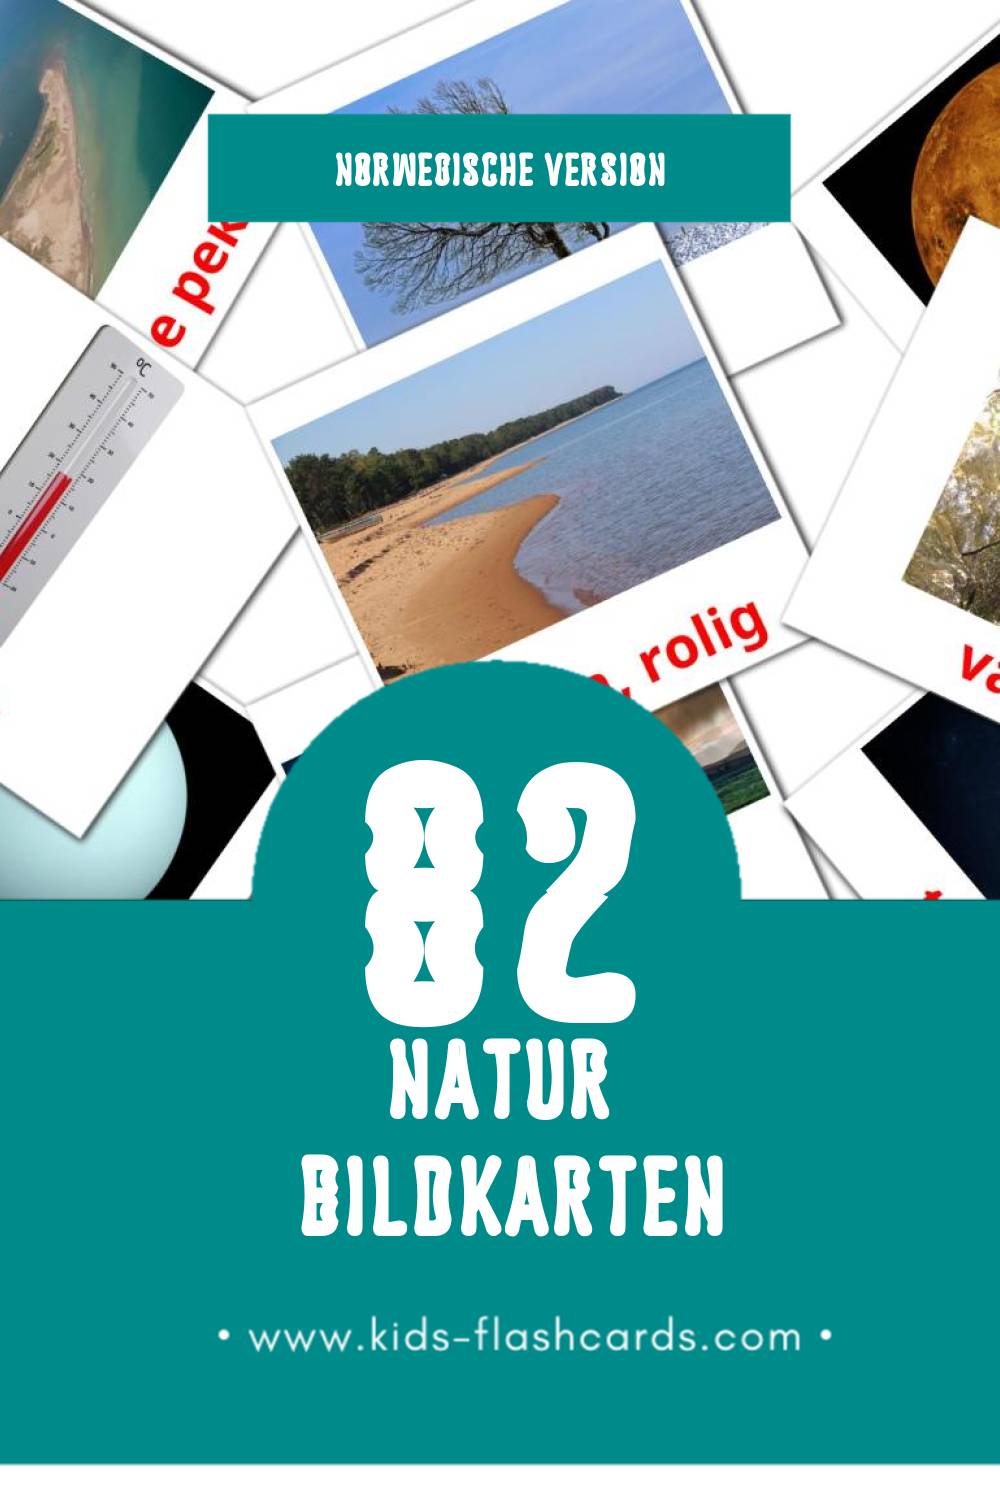 Visual Natur Flashcards für Kleinkinder (82 Karten in Norwegisch)